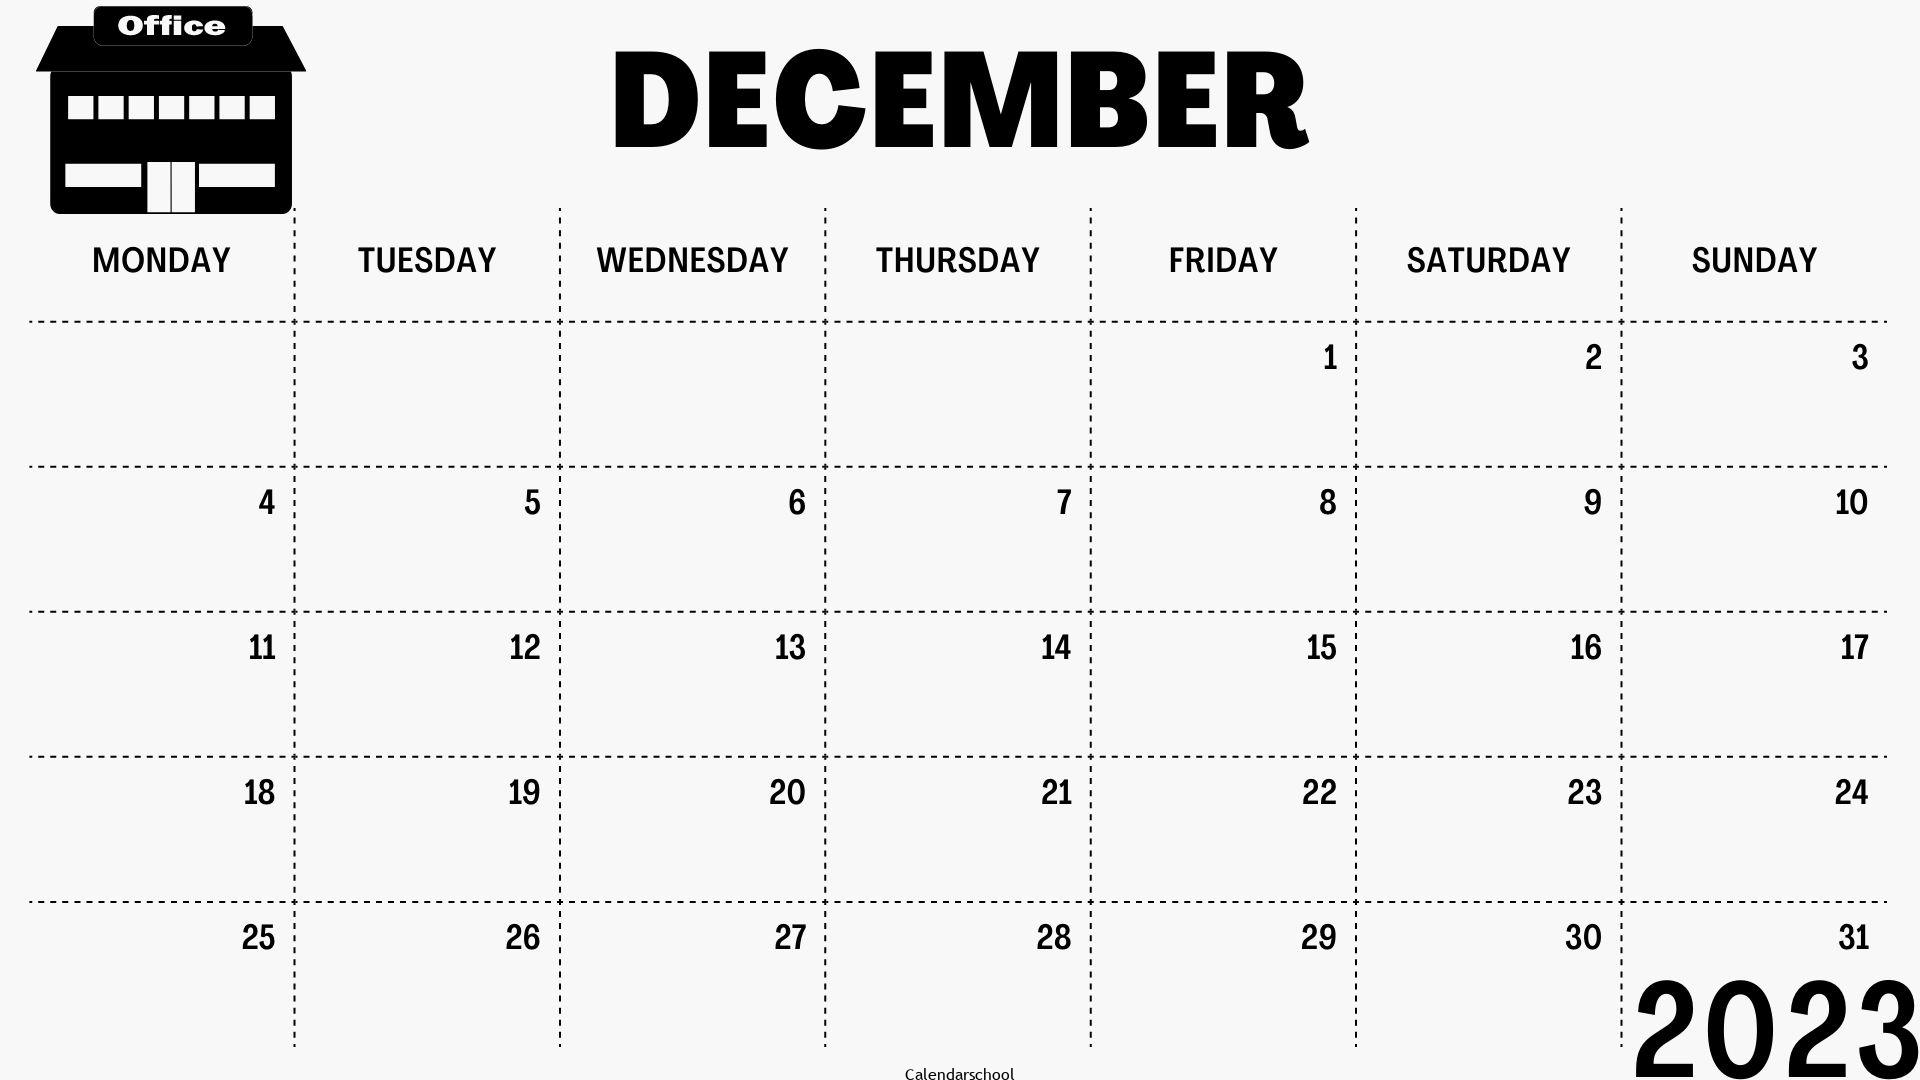 December 2023 Free Calendar Template